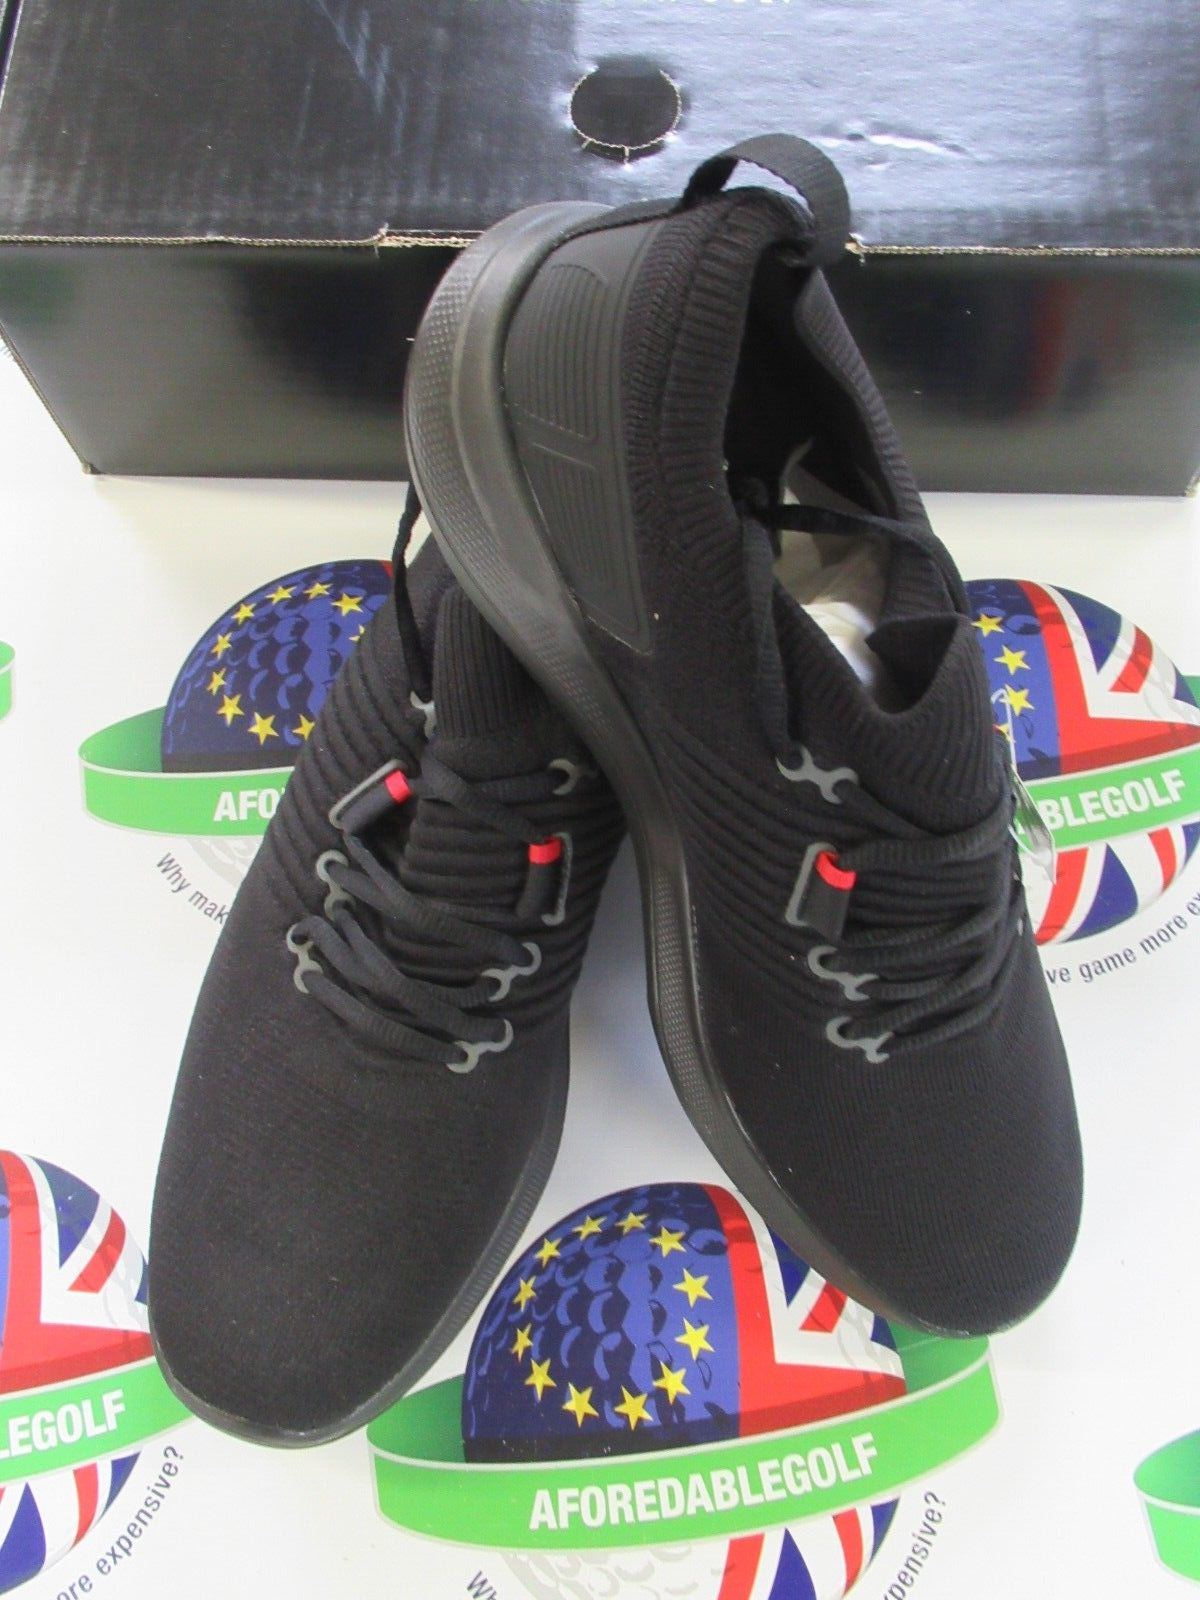 footjoy flex xp golf shoes 56271k black uk size 8.5 medium